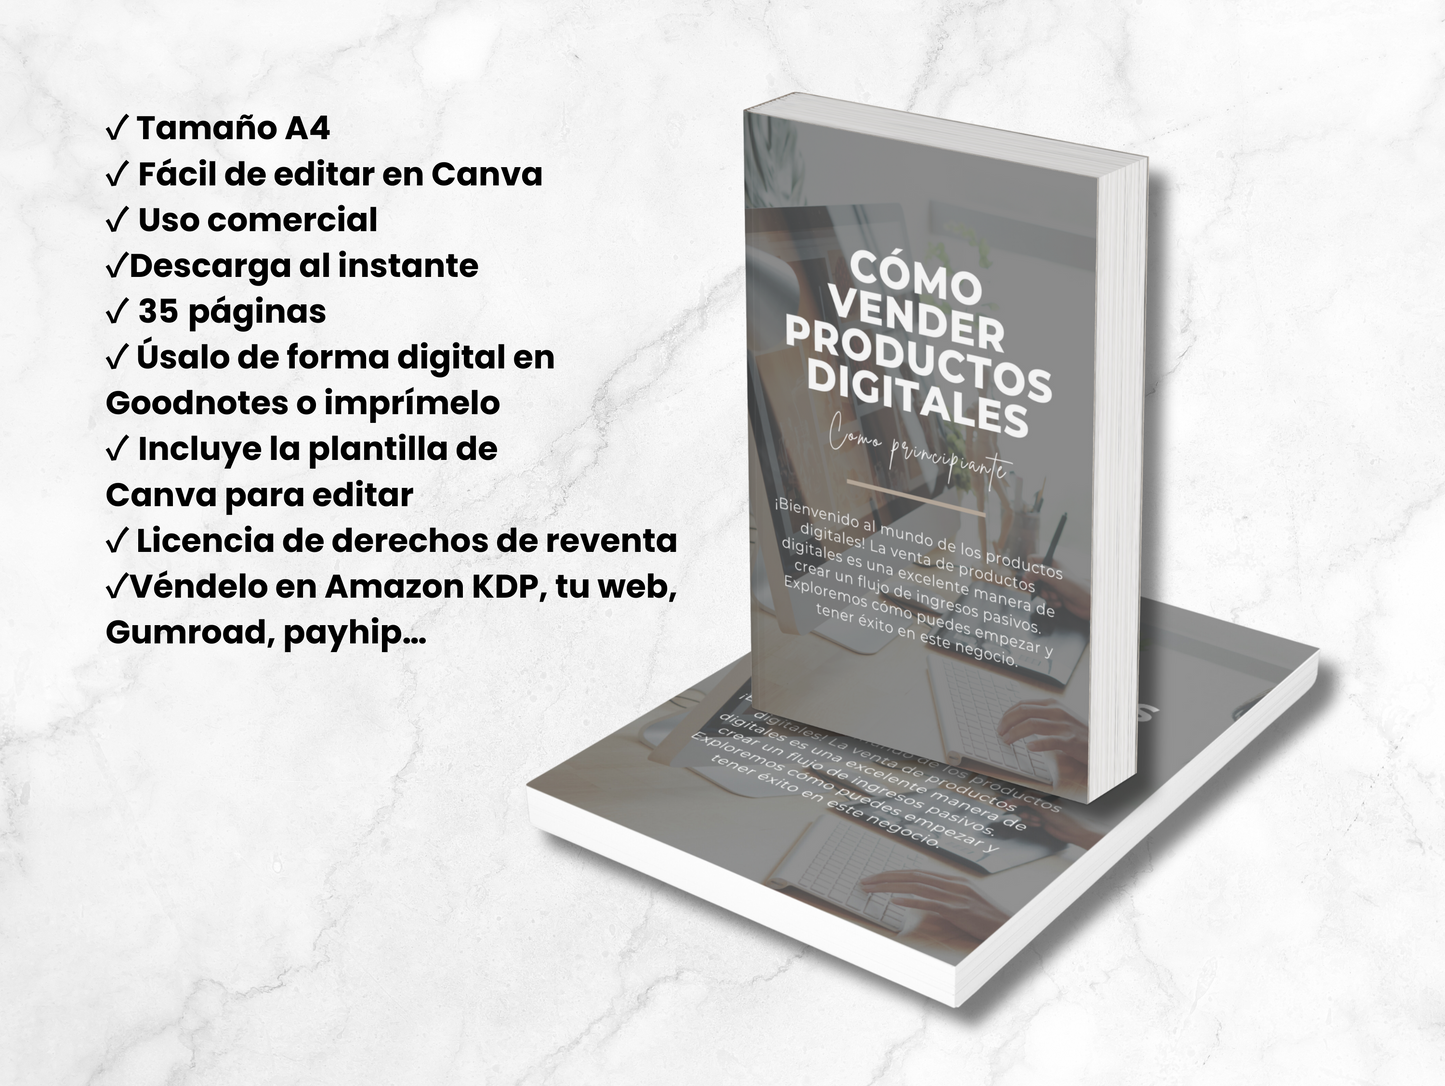 Cómo vender productos digitales, ebook en español